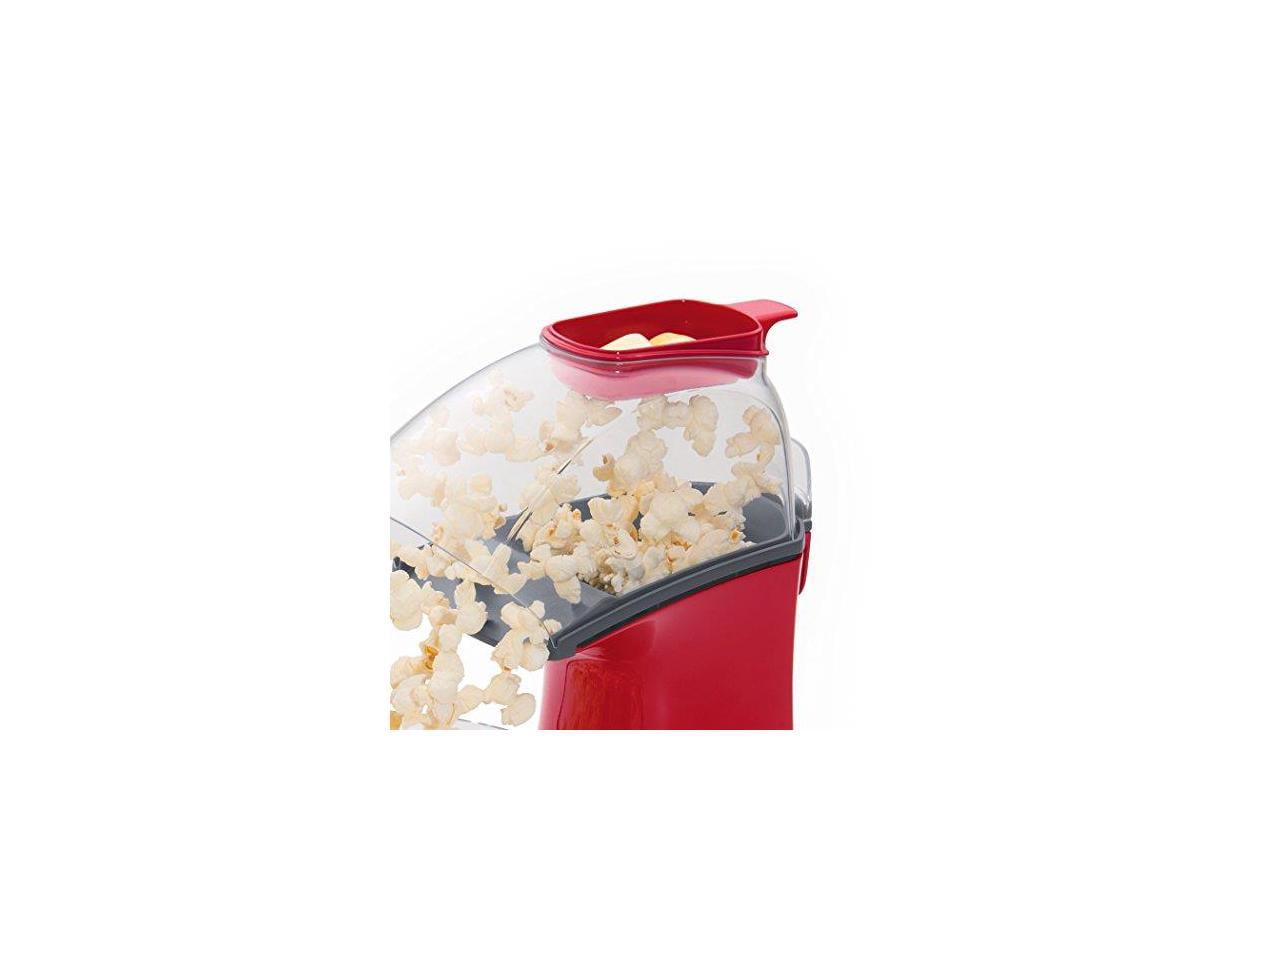 Presto PopLite Hot Air Popcorn Popper // Product Review –